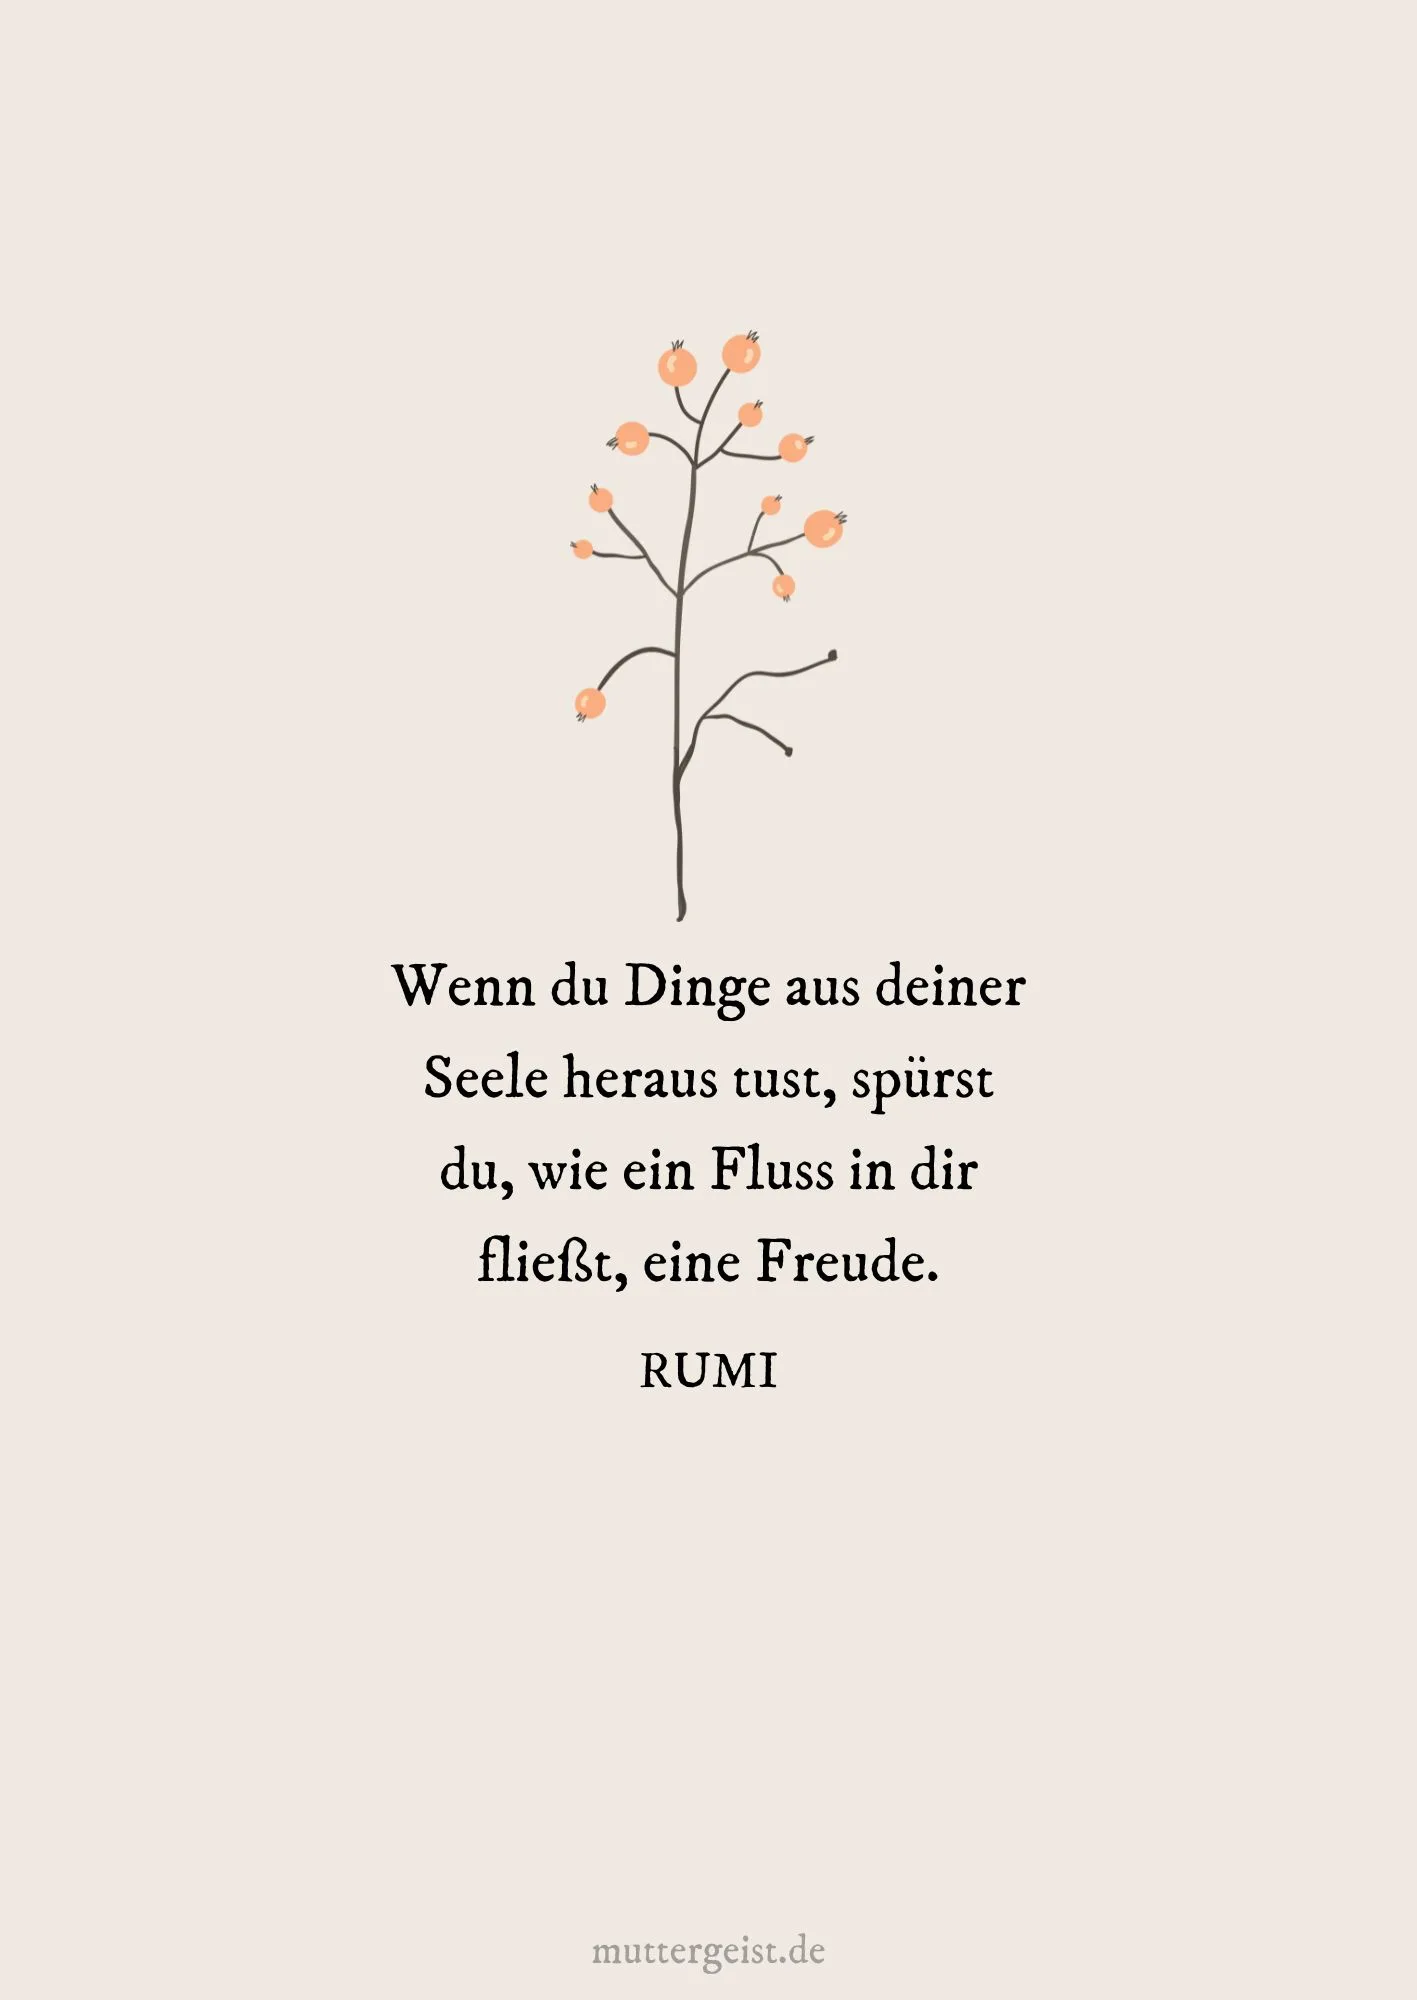 Rumis Zitat über das Handeln aus der Seele